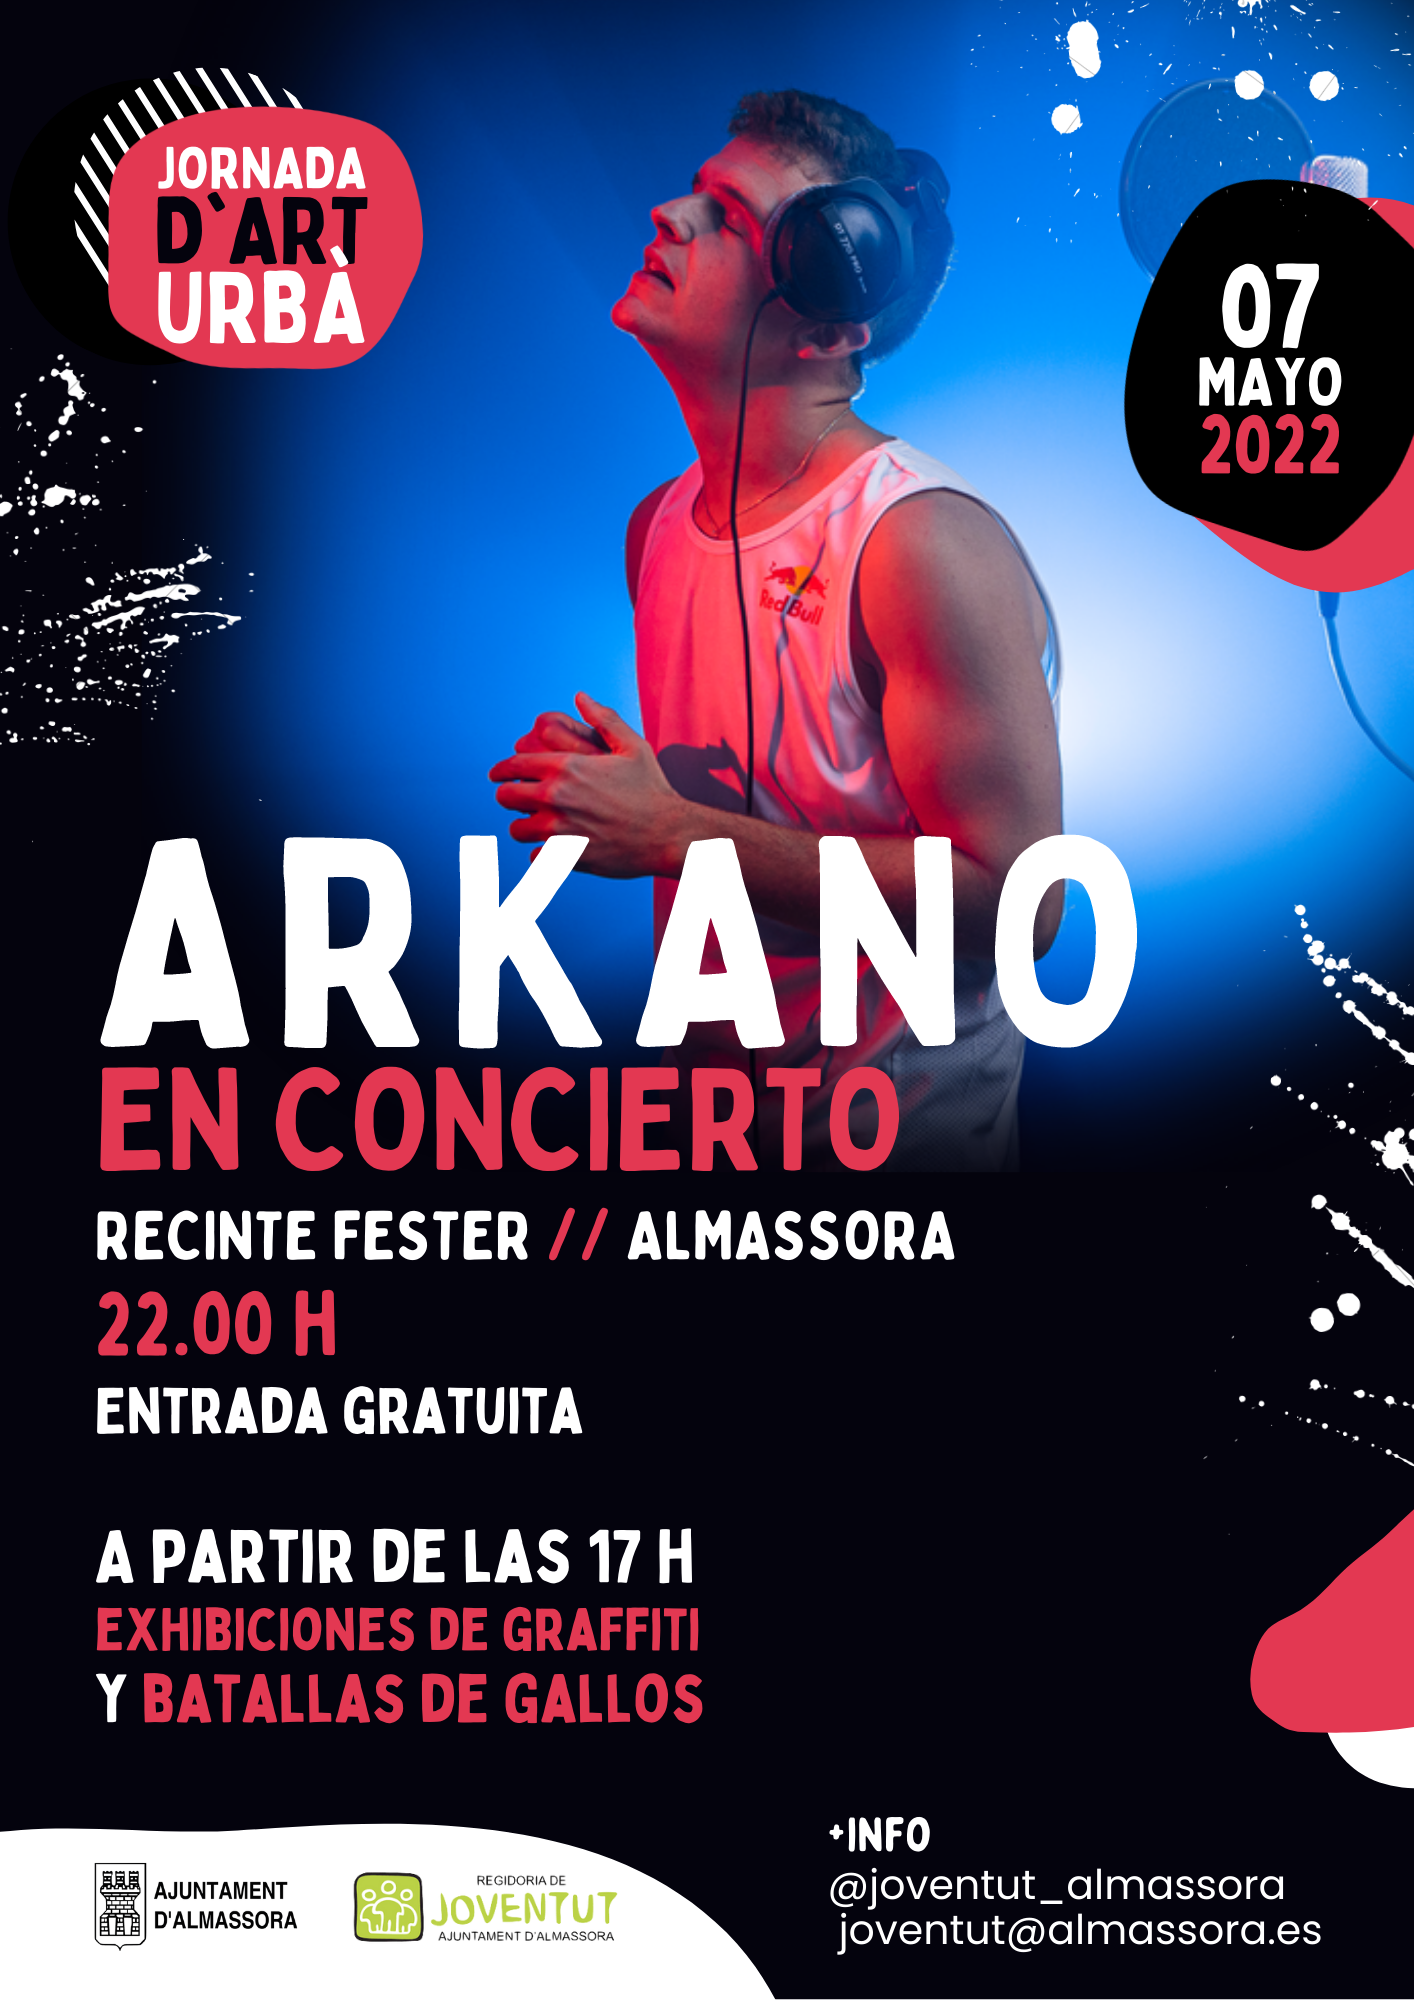 El rapero Arkano presentará su nuevo sencillo “Match” en Almassora